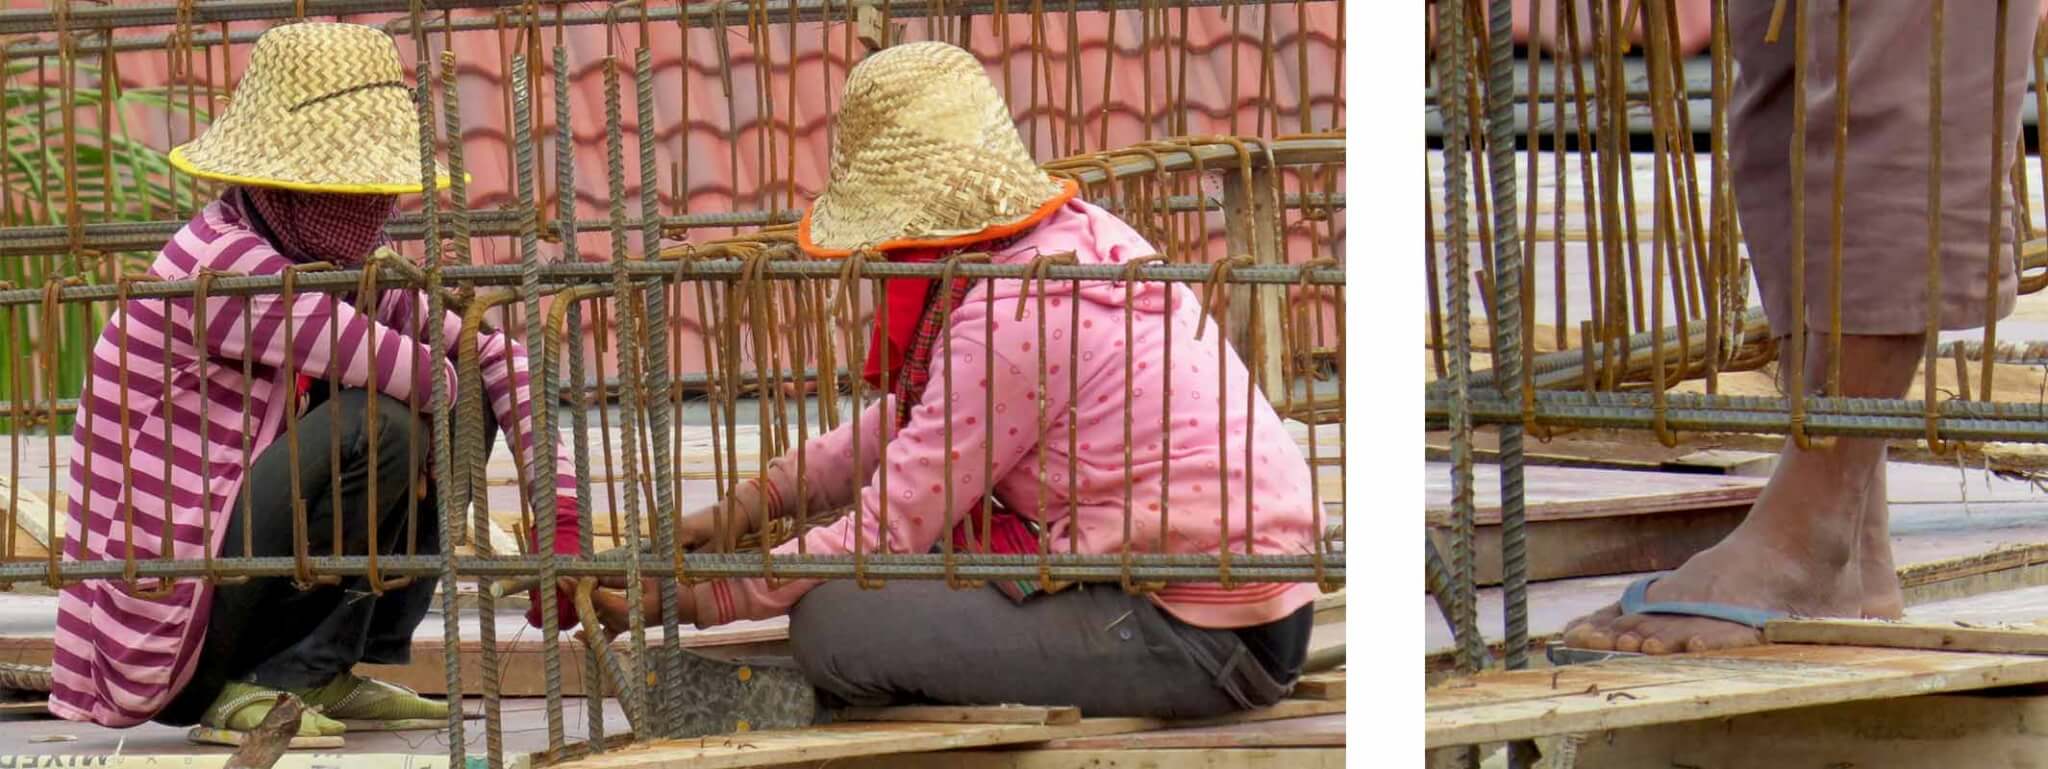 Hausbau, Bauarbeiter in Siem Reap